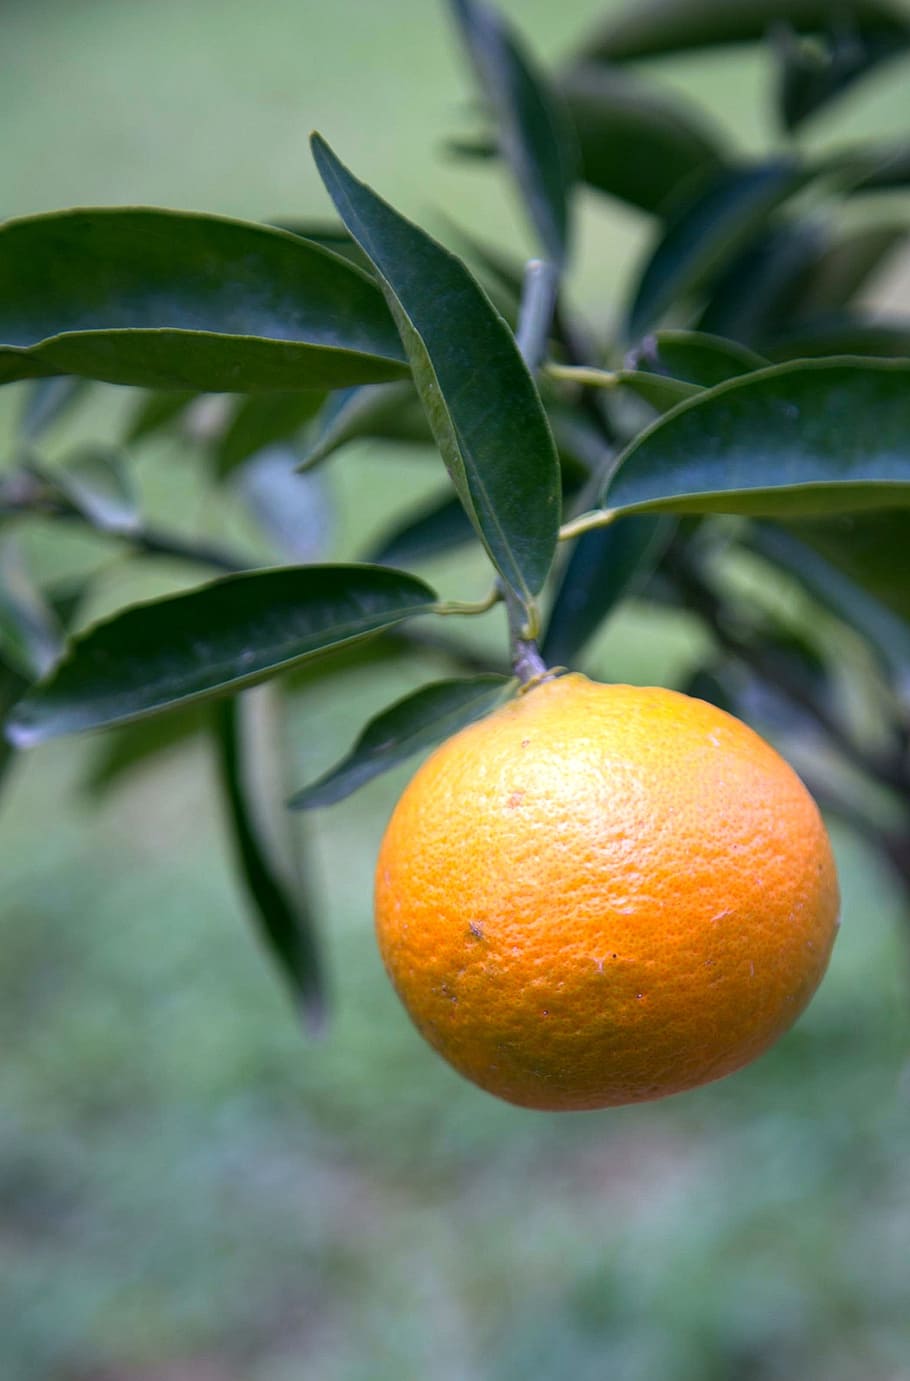 mandarina, fruta, jardín, comida, hoja, alimentación saludable, comida y bebida, cítricos, parte de la planta, color naranja